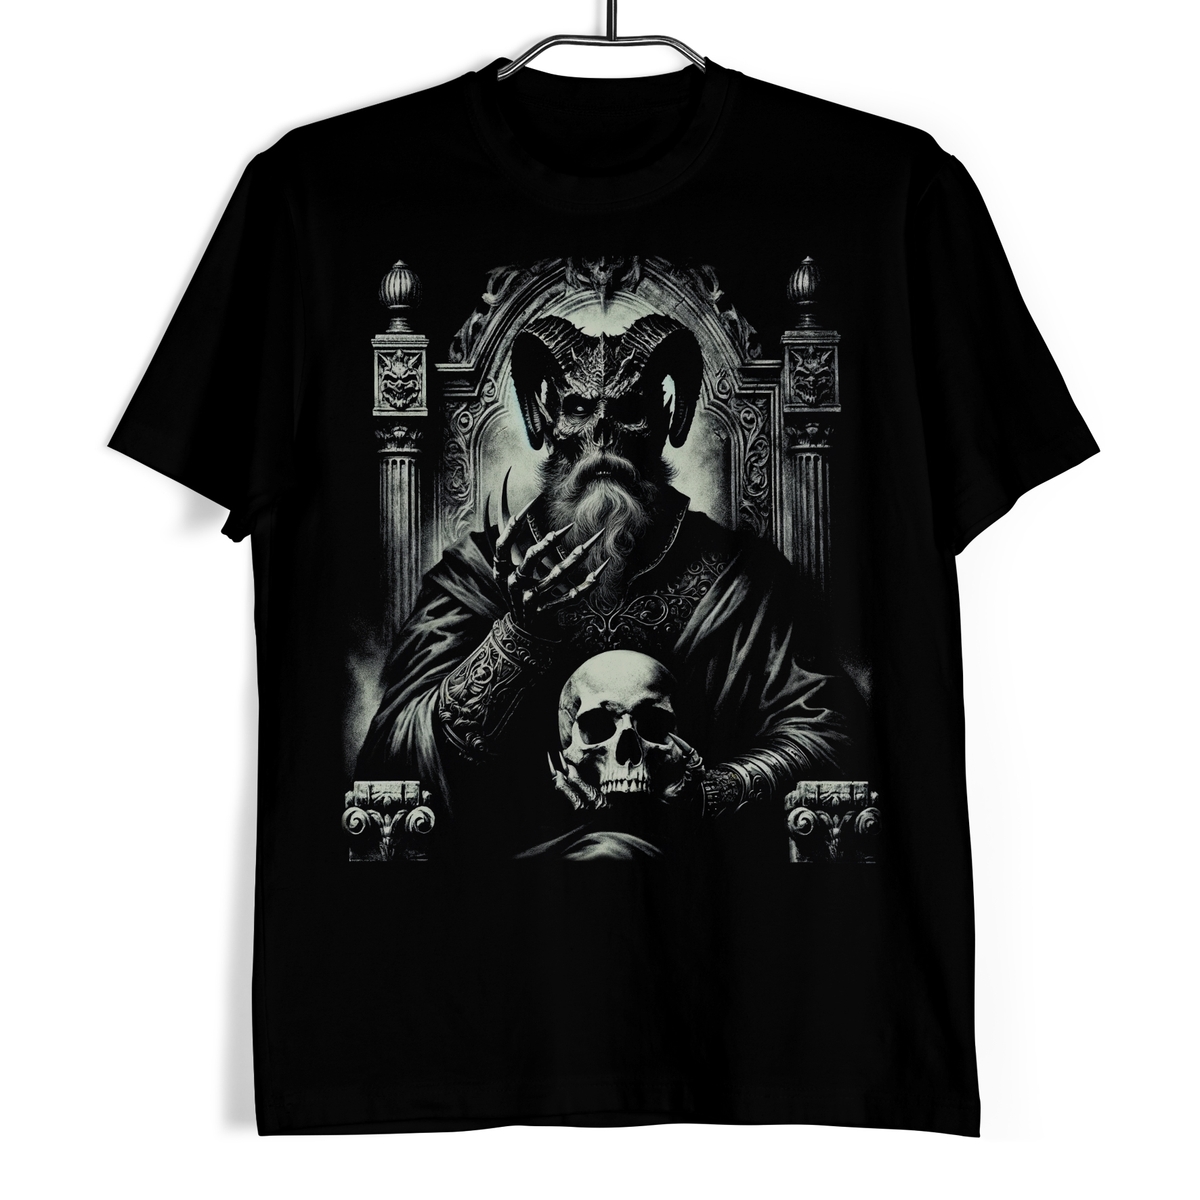 Tričko s lebkou - Vládce temného trůnu XL